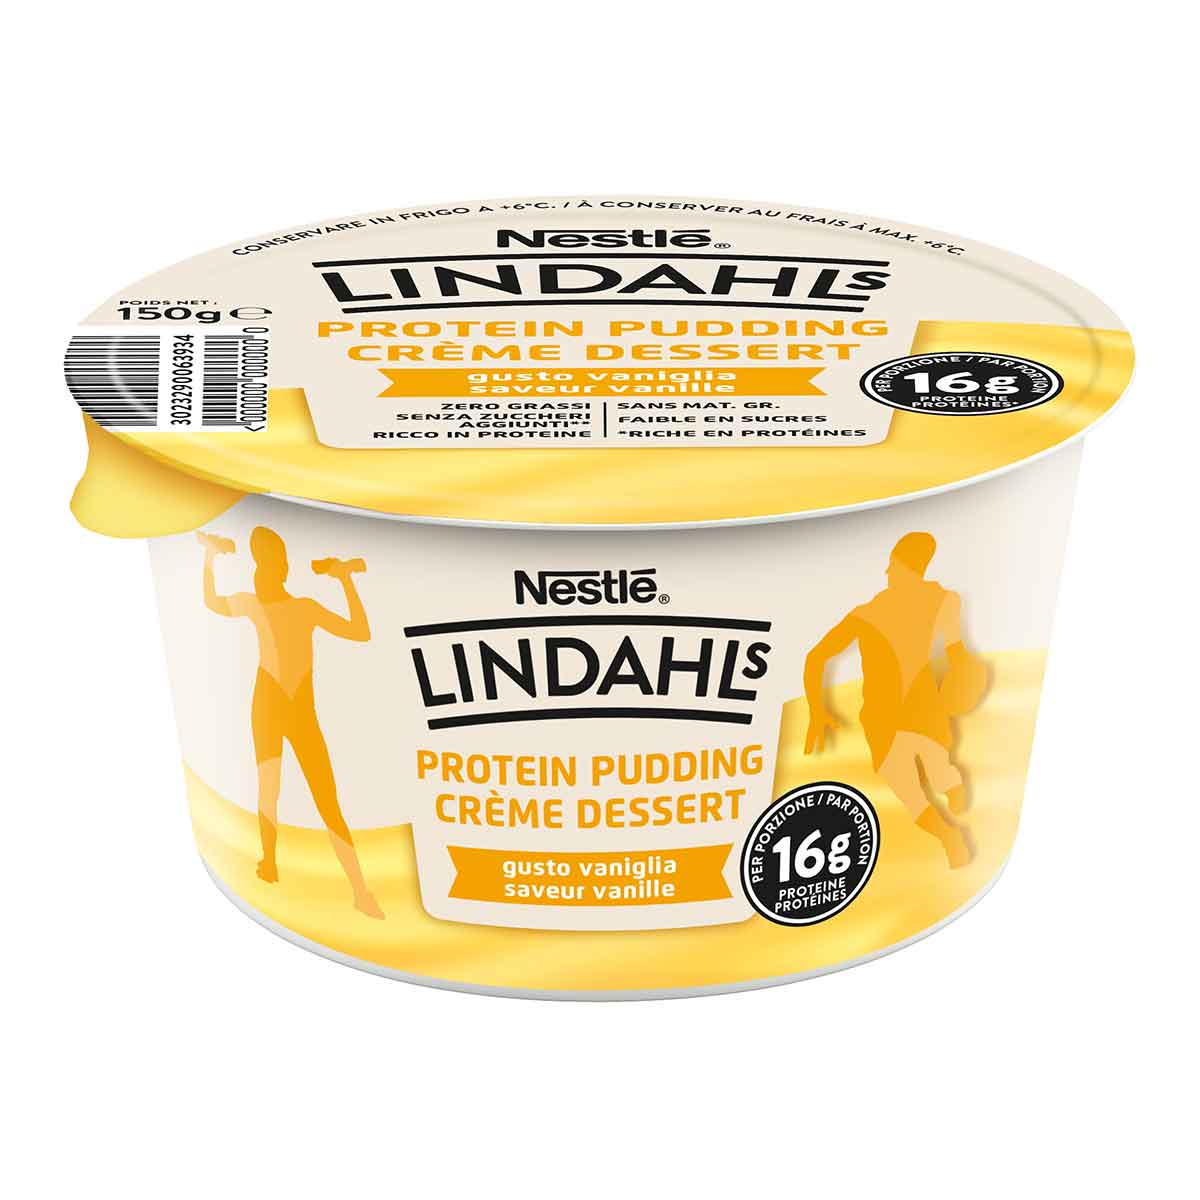 Lindahl's protein pudding gusto vaniglia